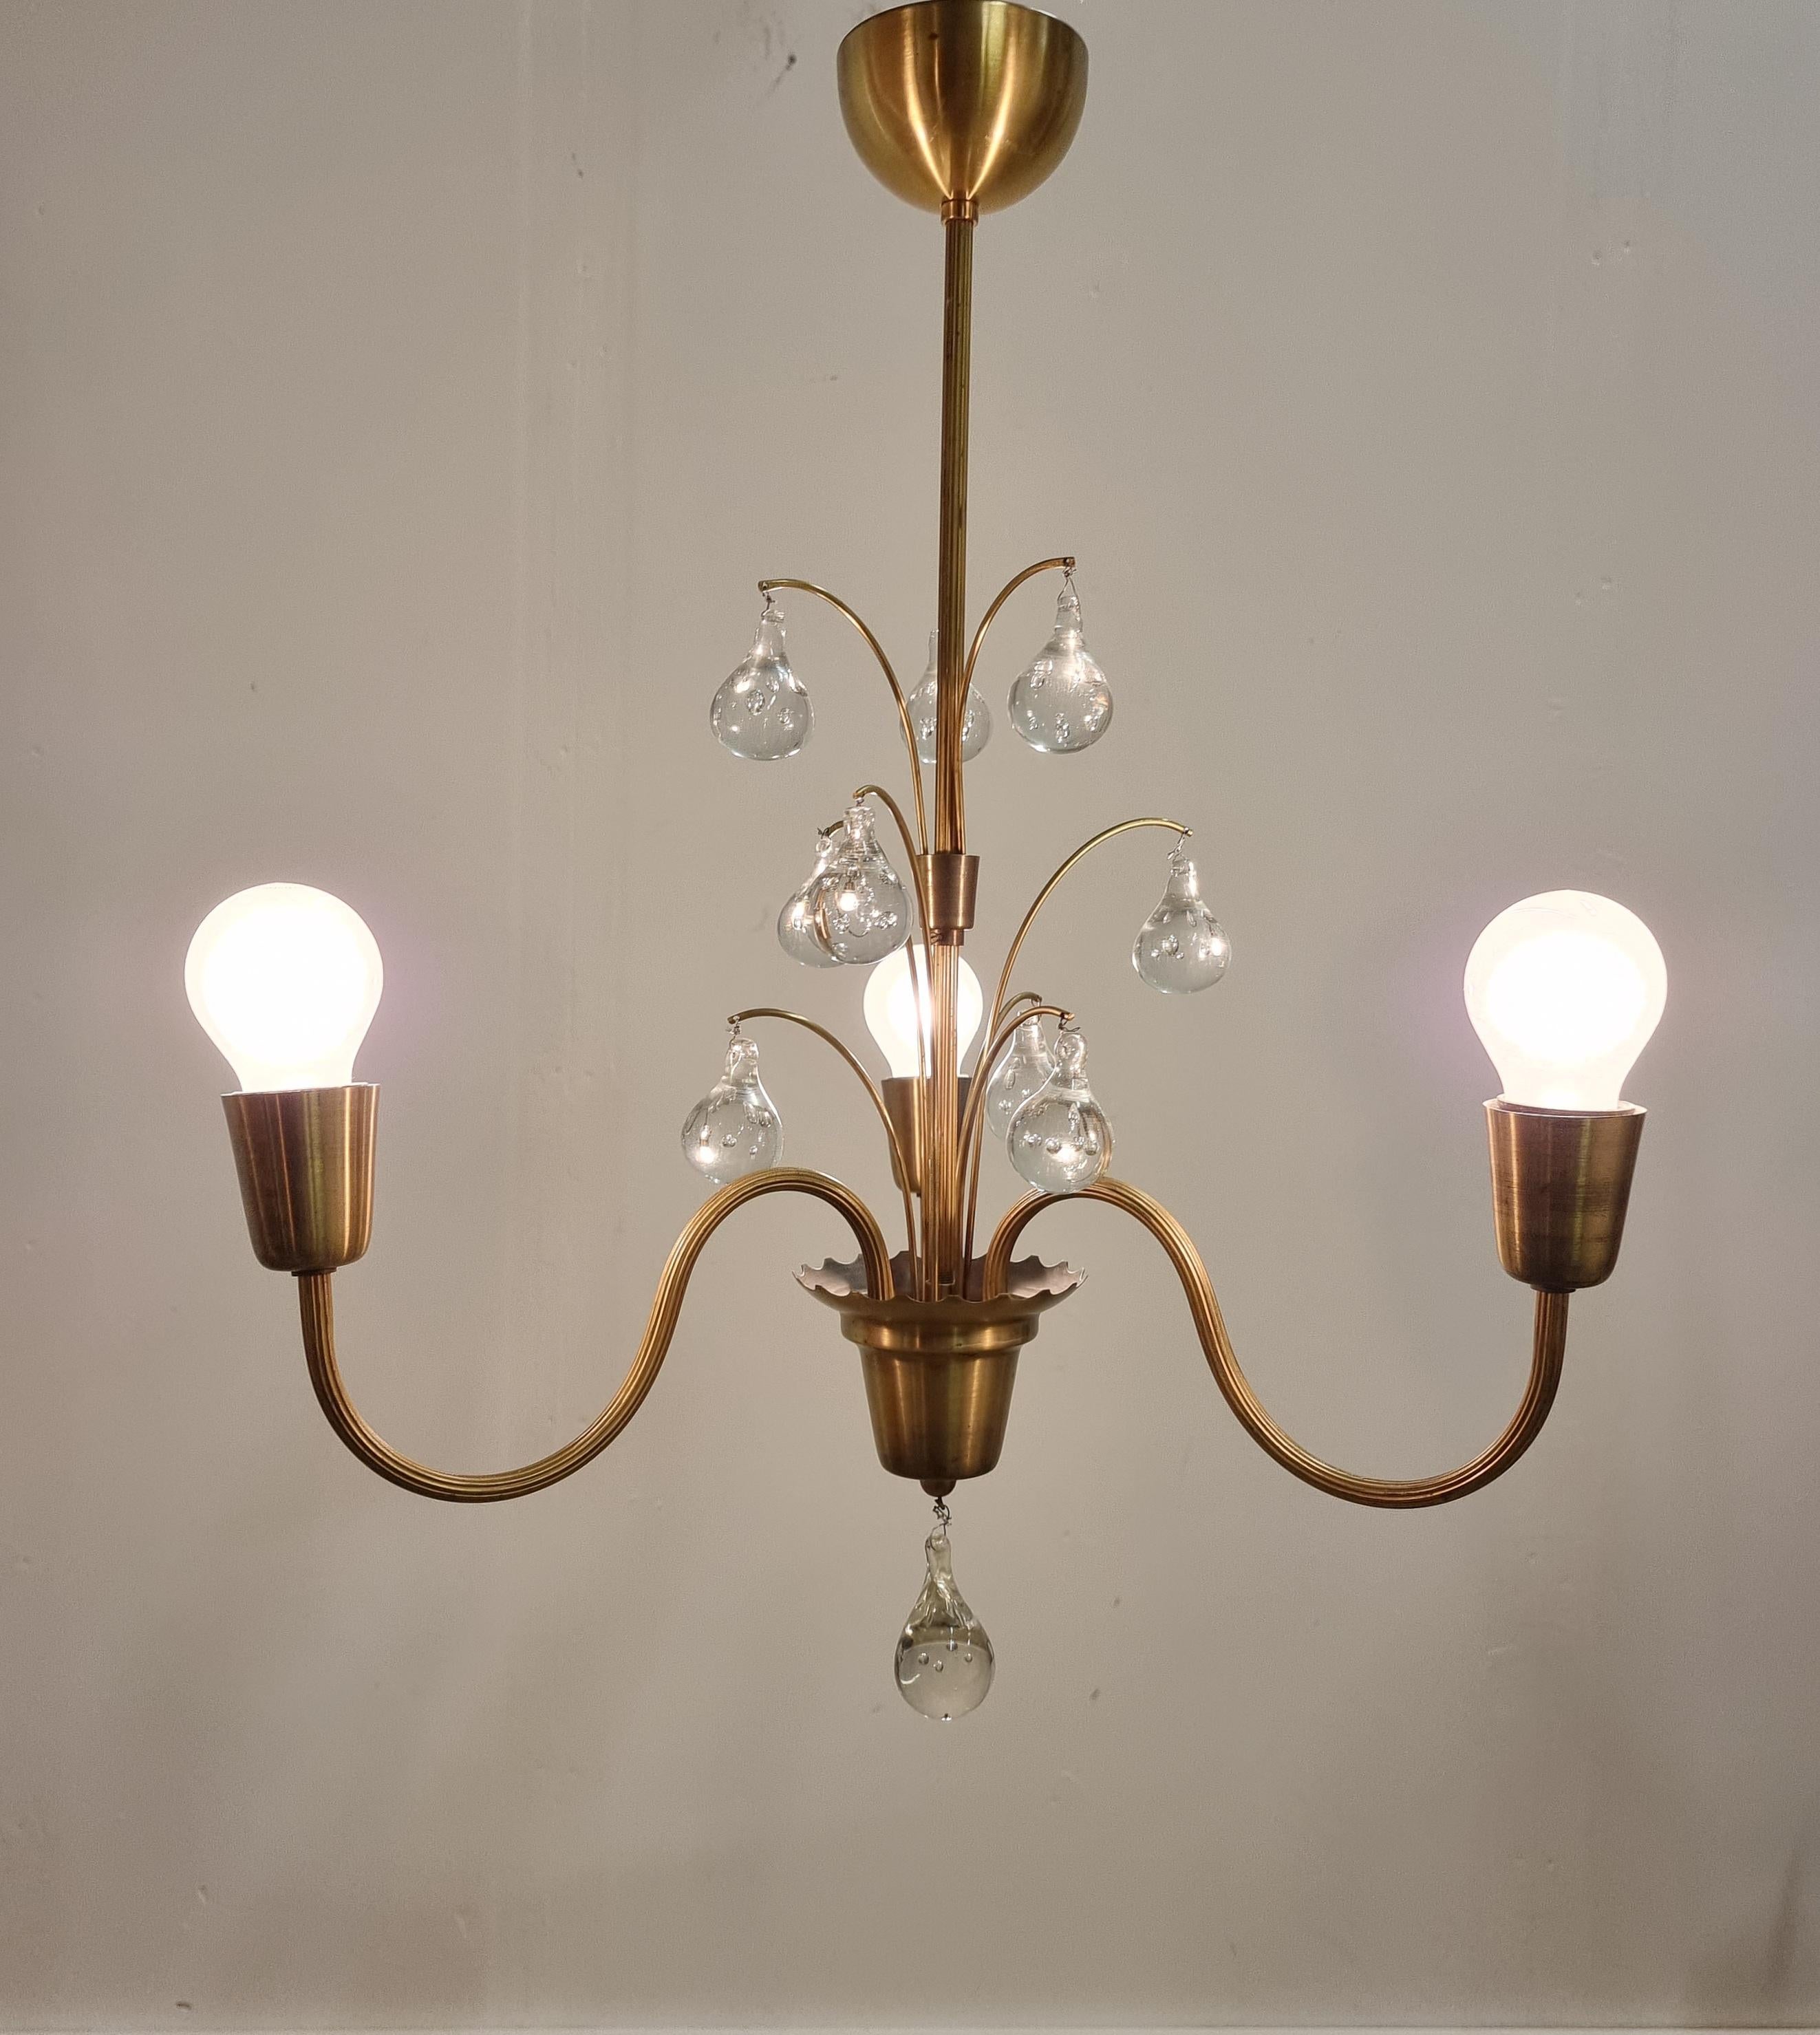 Dekorative Messinglampe mit Glastropfen-Details, drei Lampenfassungen. Hergestellt in Schweden, 1940/50er Jahre. In gutem Zustand mit ein paar kleineren Alters- und Gebrauchsspuren. 


Alle Originalteile, keine Änderungen. Wir empfehlen, diese Lampe